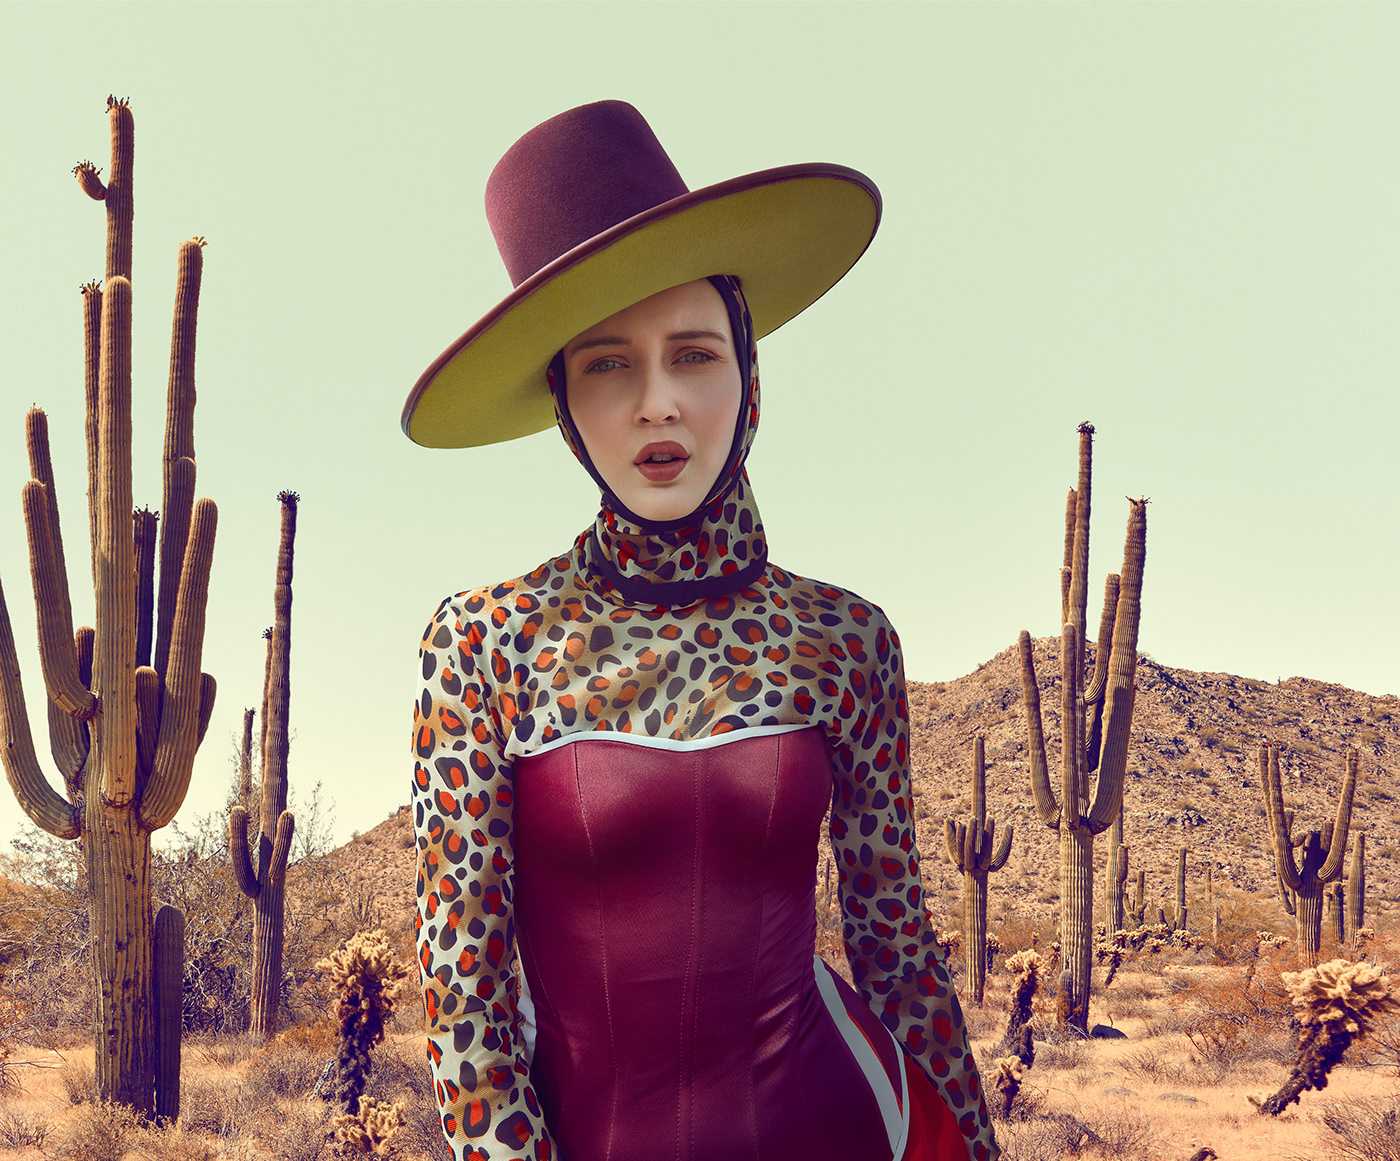 band cactus chapeau colorful desert hat musician portrait Portraiture sand